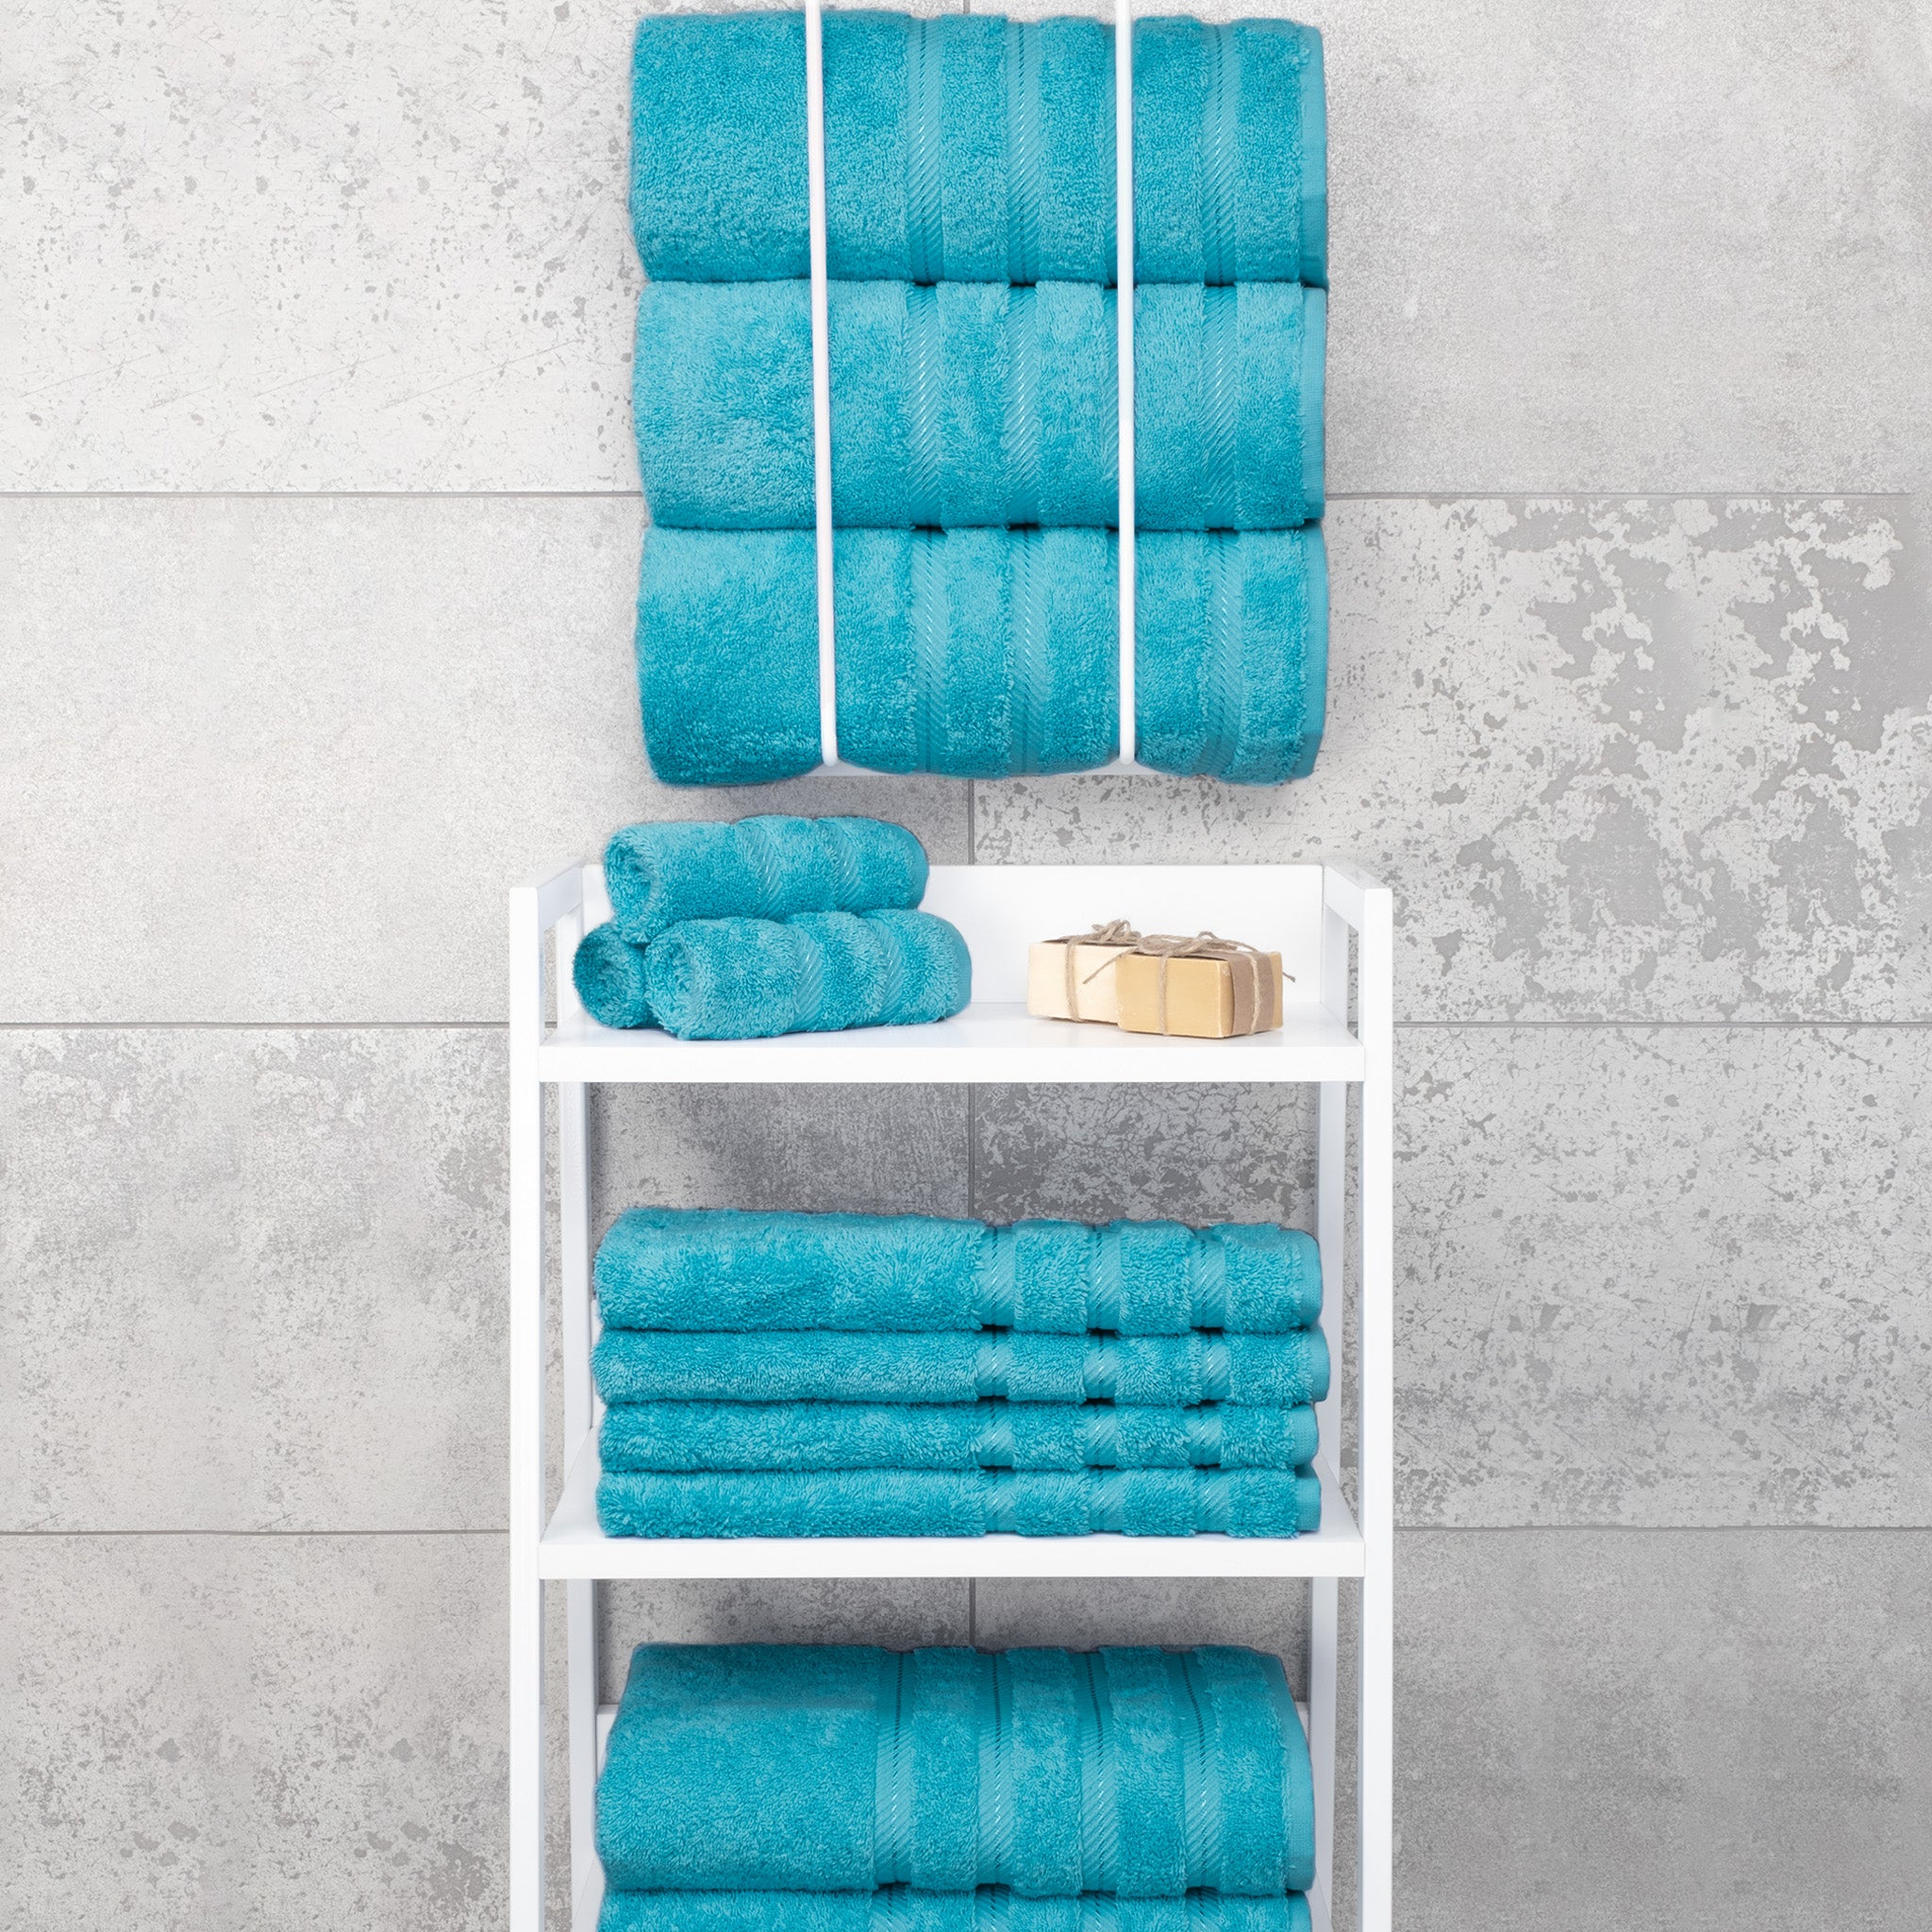 American Soft Linen 100% Turkish Cotton 4 Pack Bath Towel Set Wholesale aqua-7